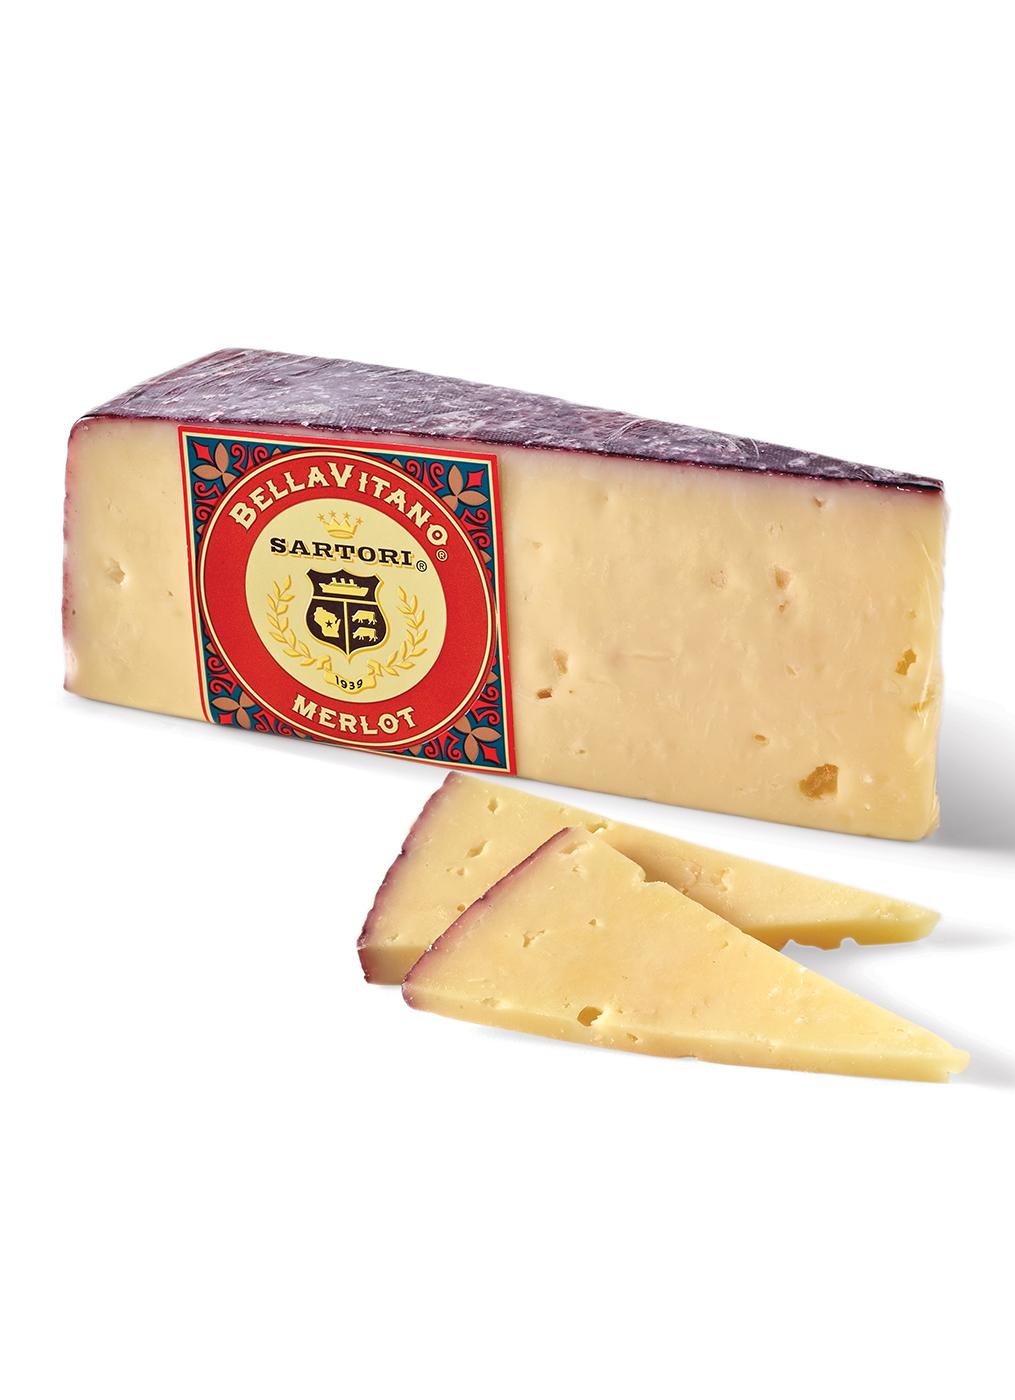 Sartori Merlot BellaVitano Cheese Wedge; image 1 of 3